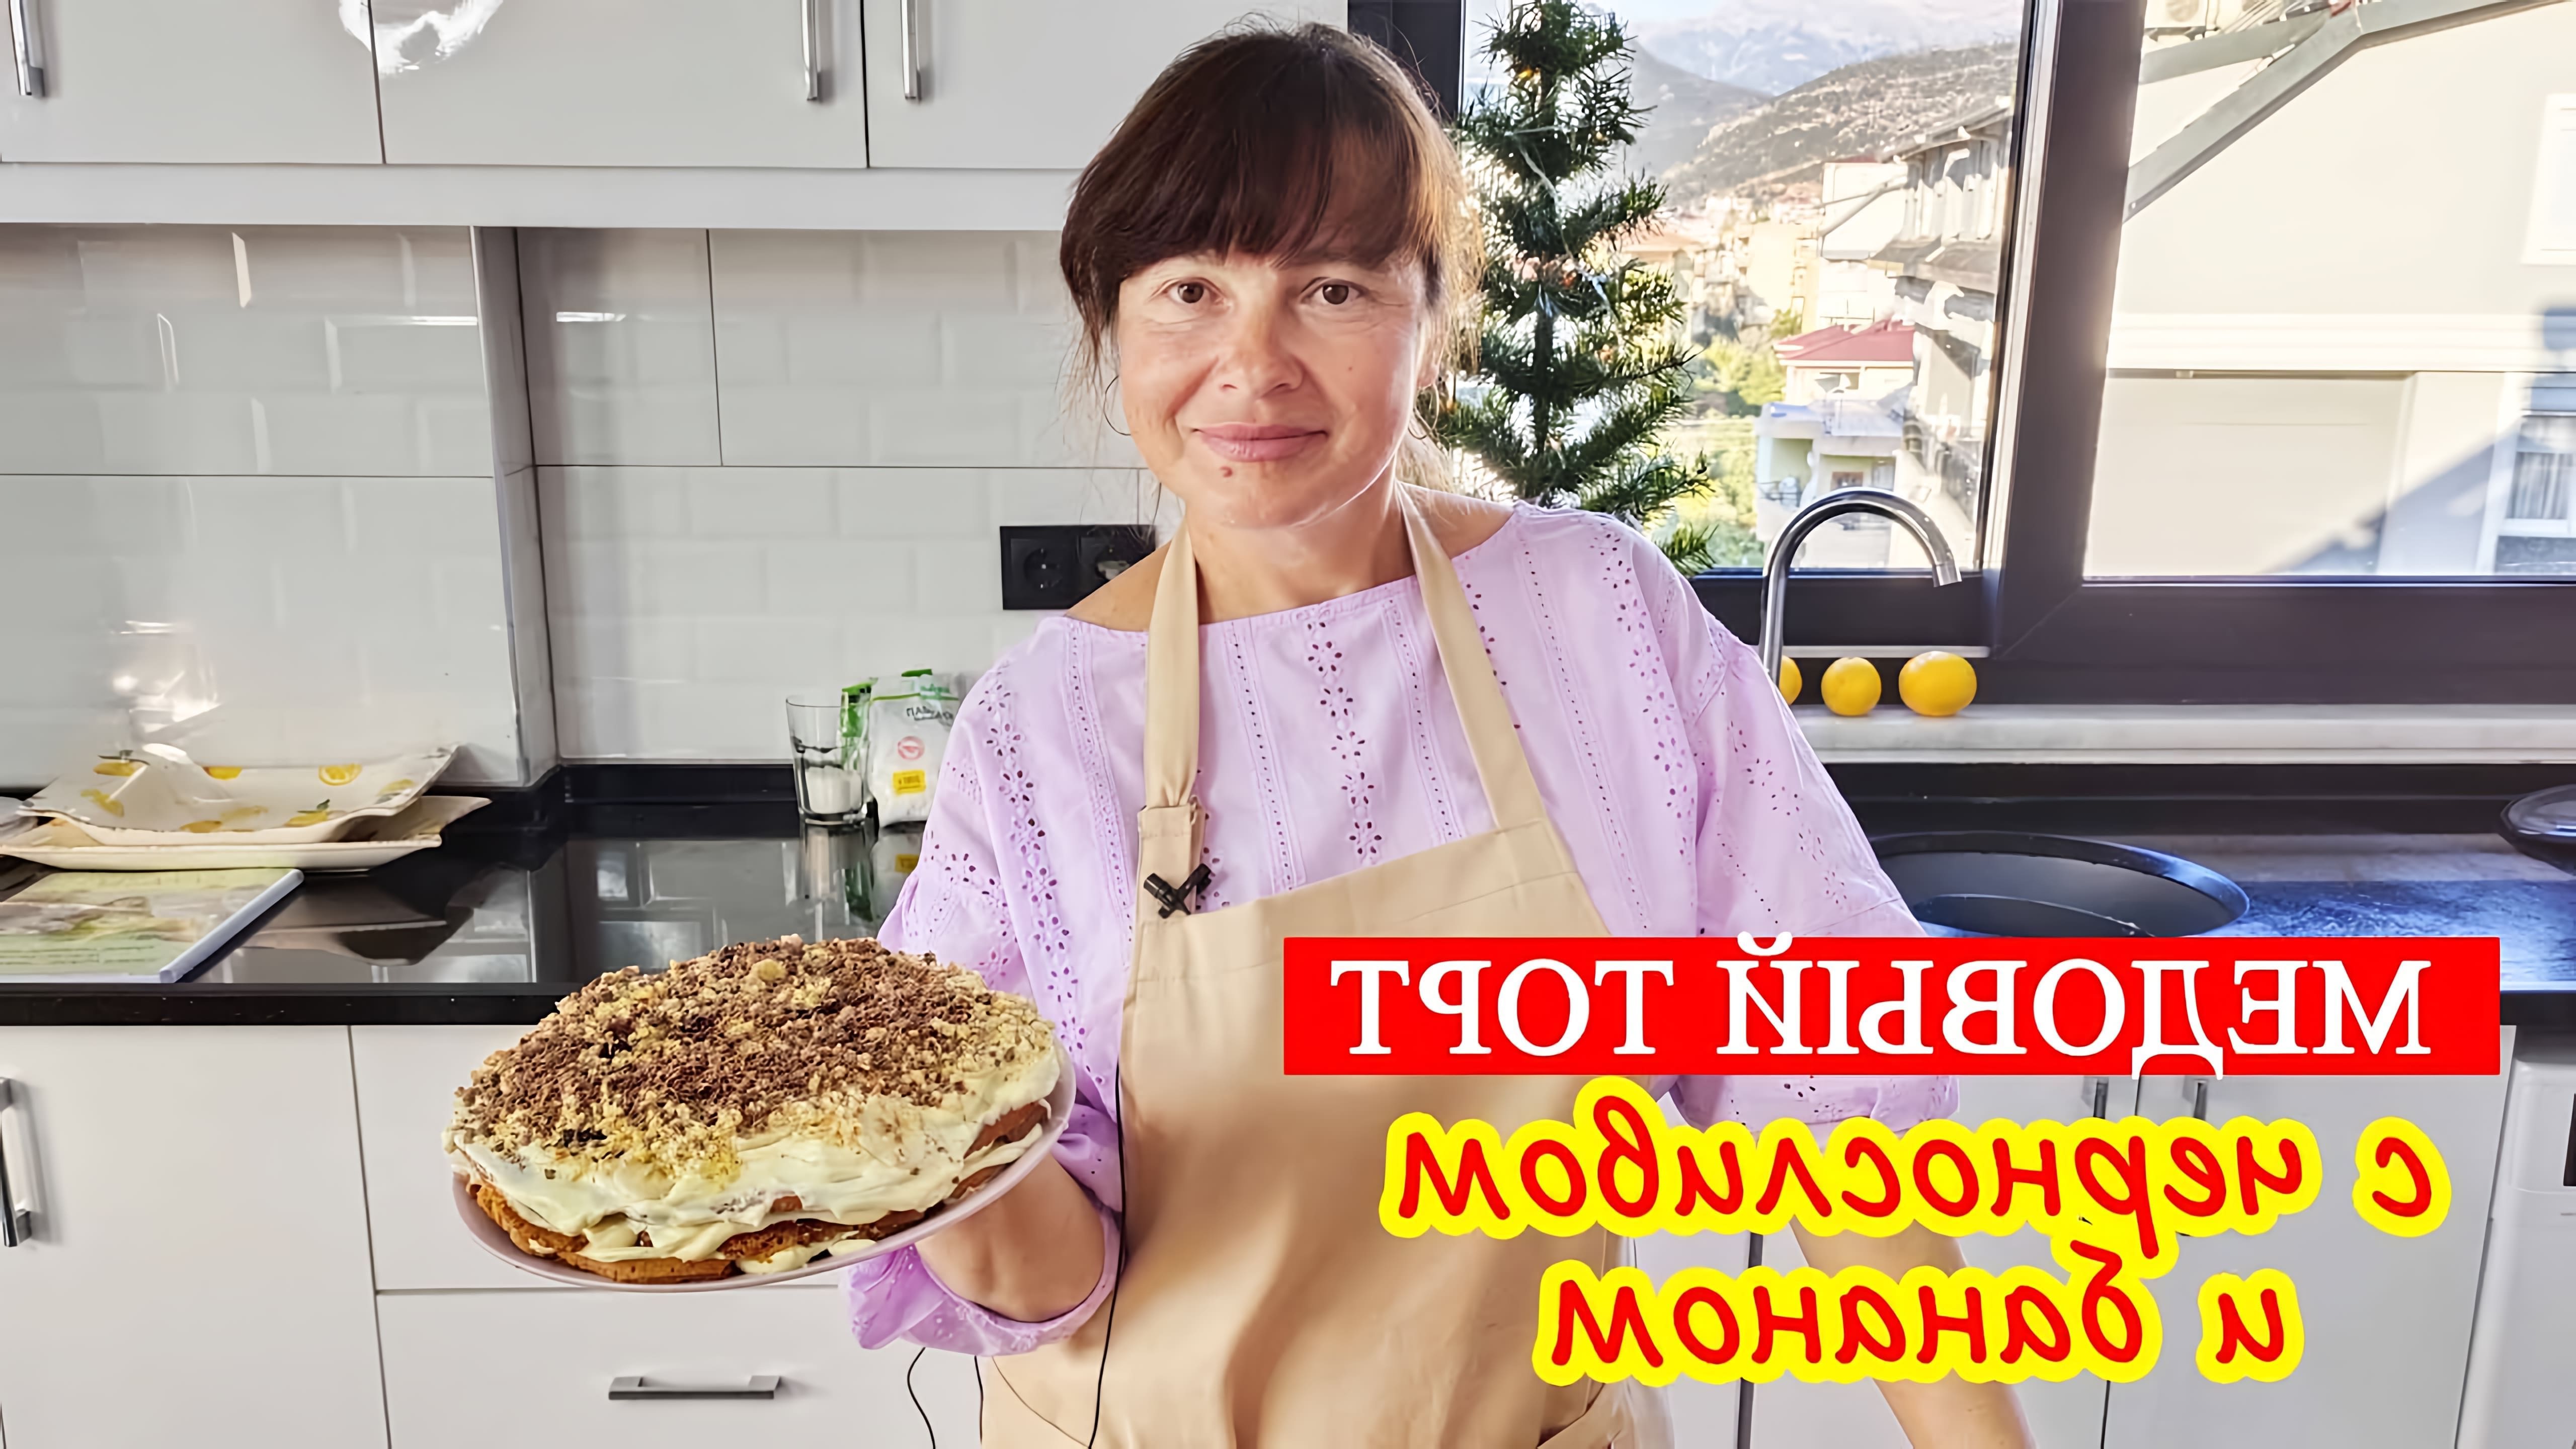 В этом видео автор готовит медовый торт с черносливом и бананом по рецепту Светланы Зинченко